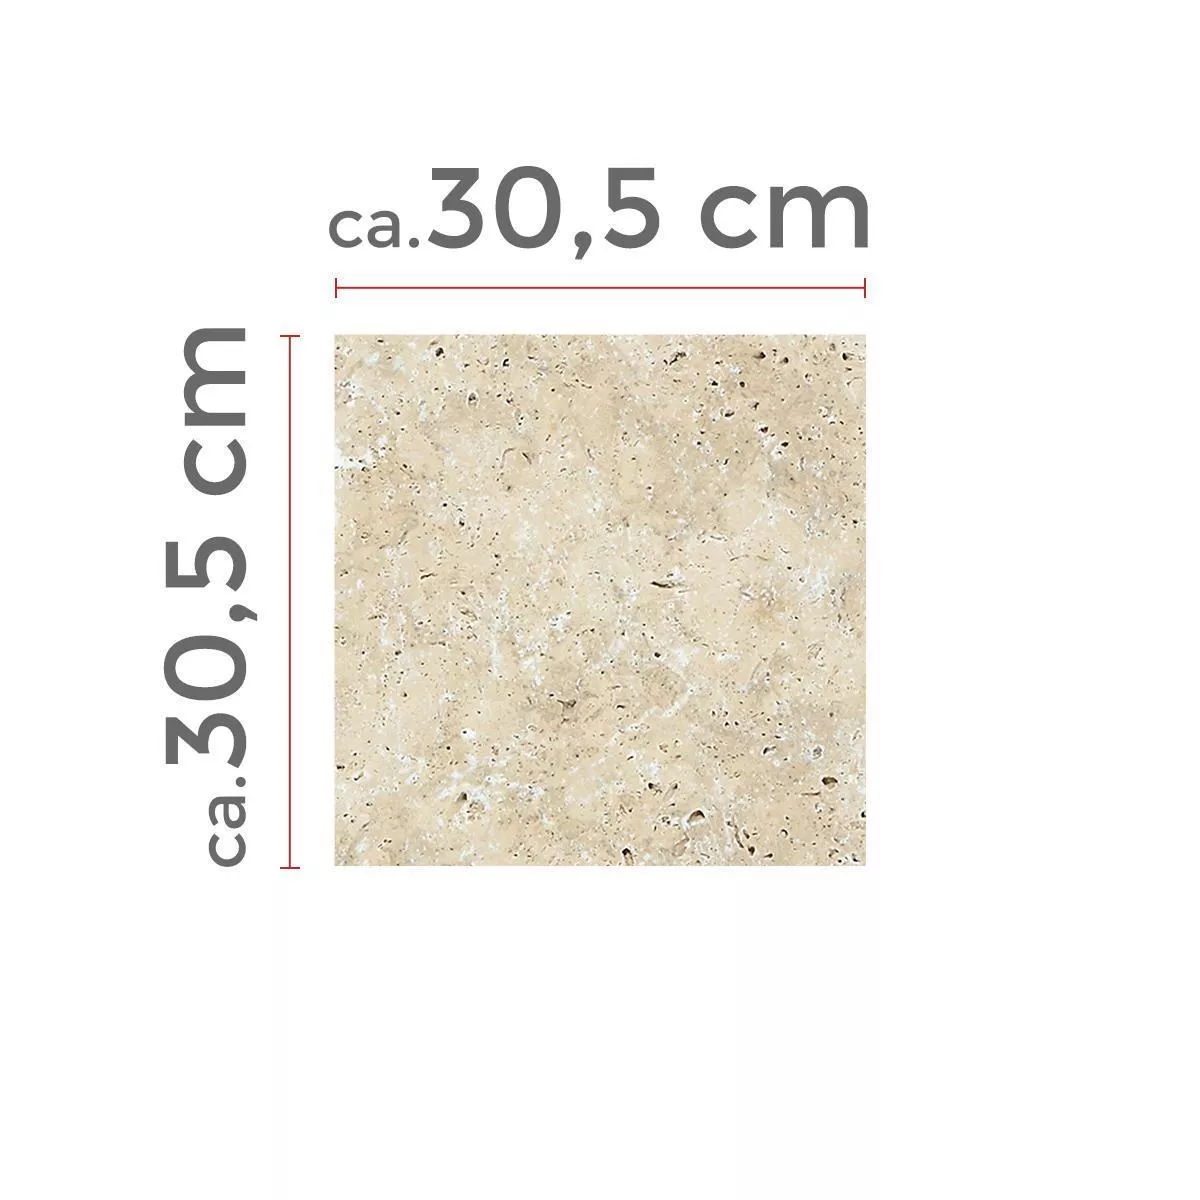 Πρότυπο Πλακάκια Aπό Φυσική Πέτρα Είδος Ασβεστόλιθου Barga Μπεζ 30,5x30,5cm